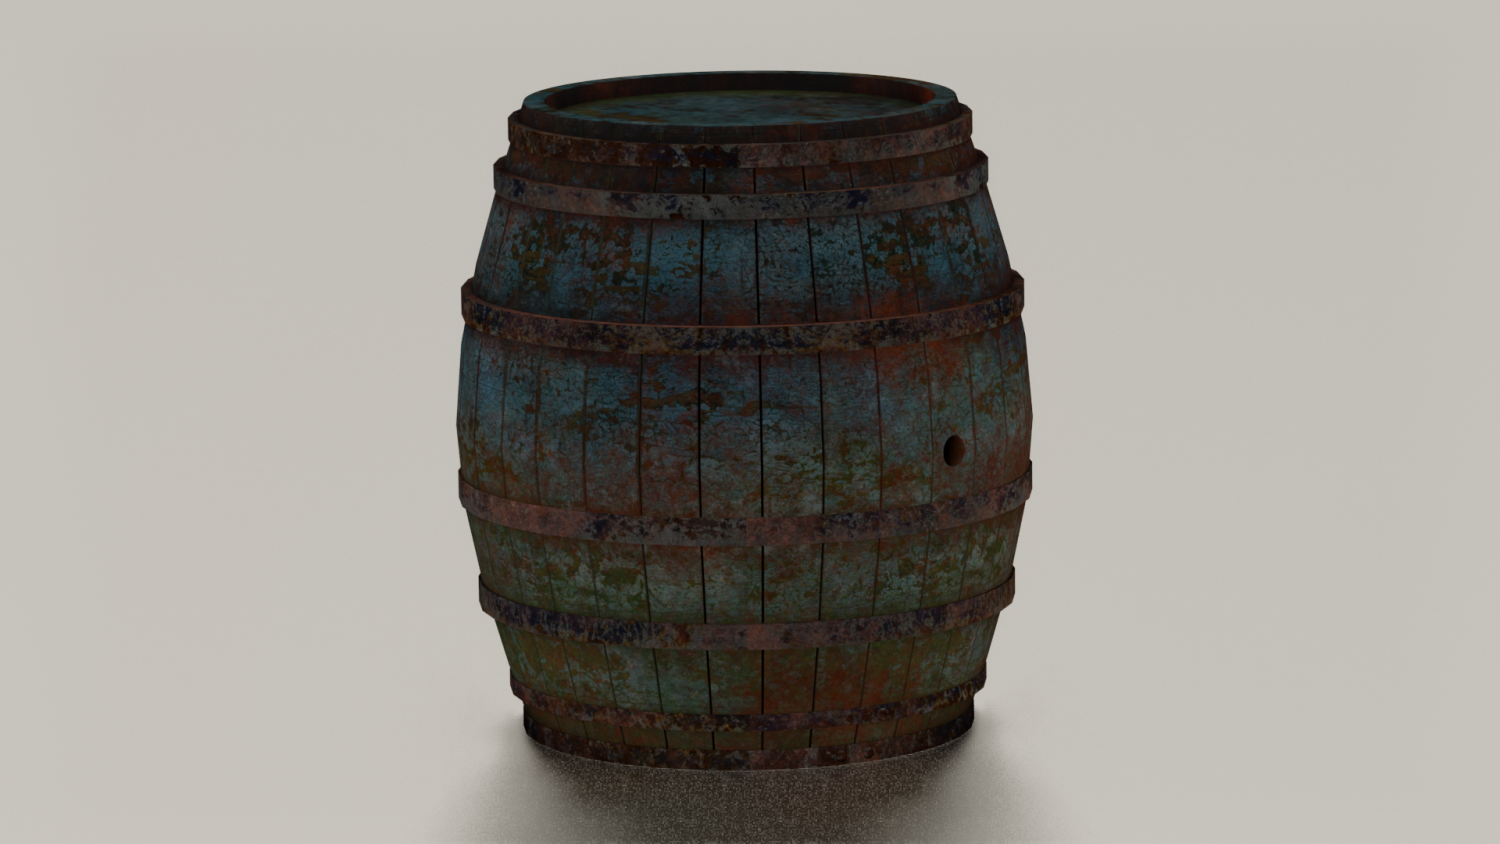 Instant barrel rust фото 60